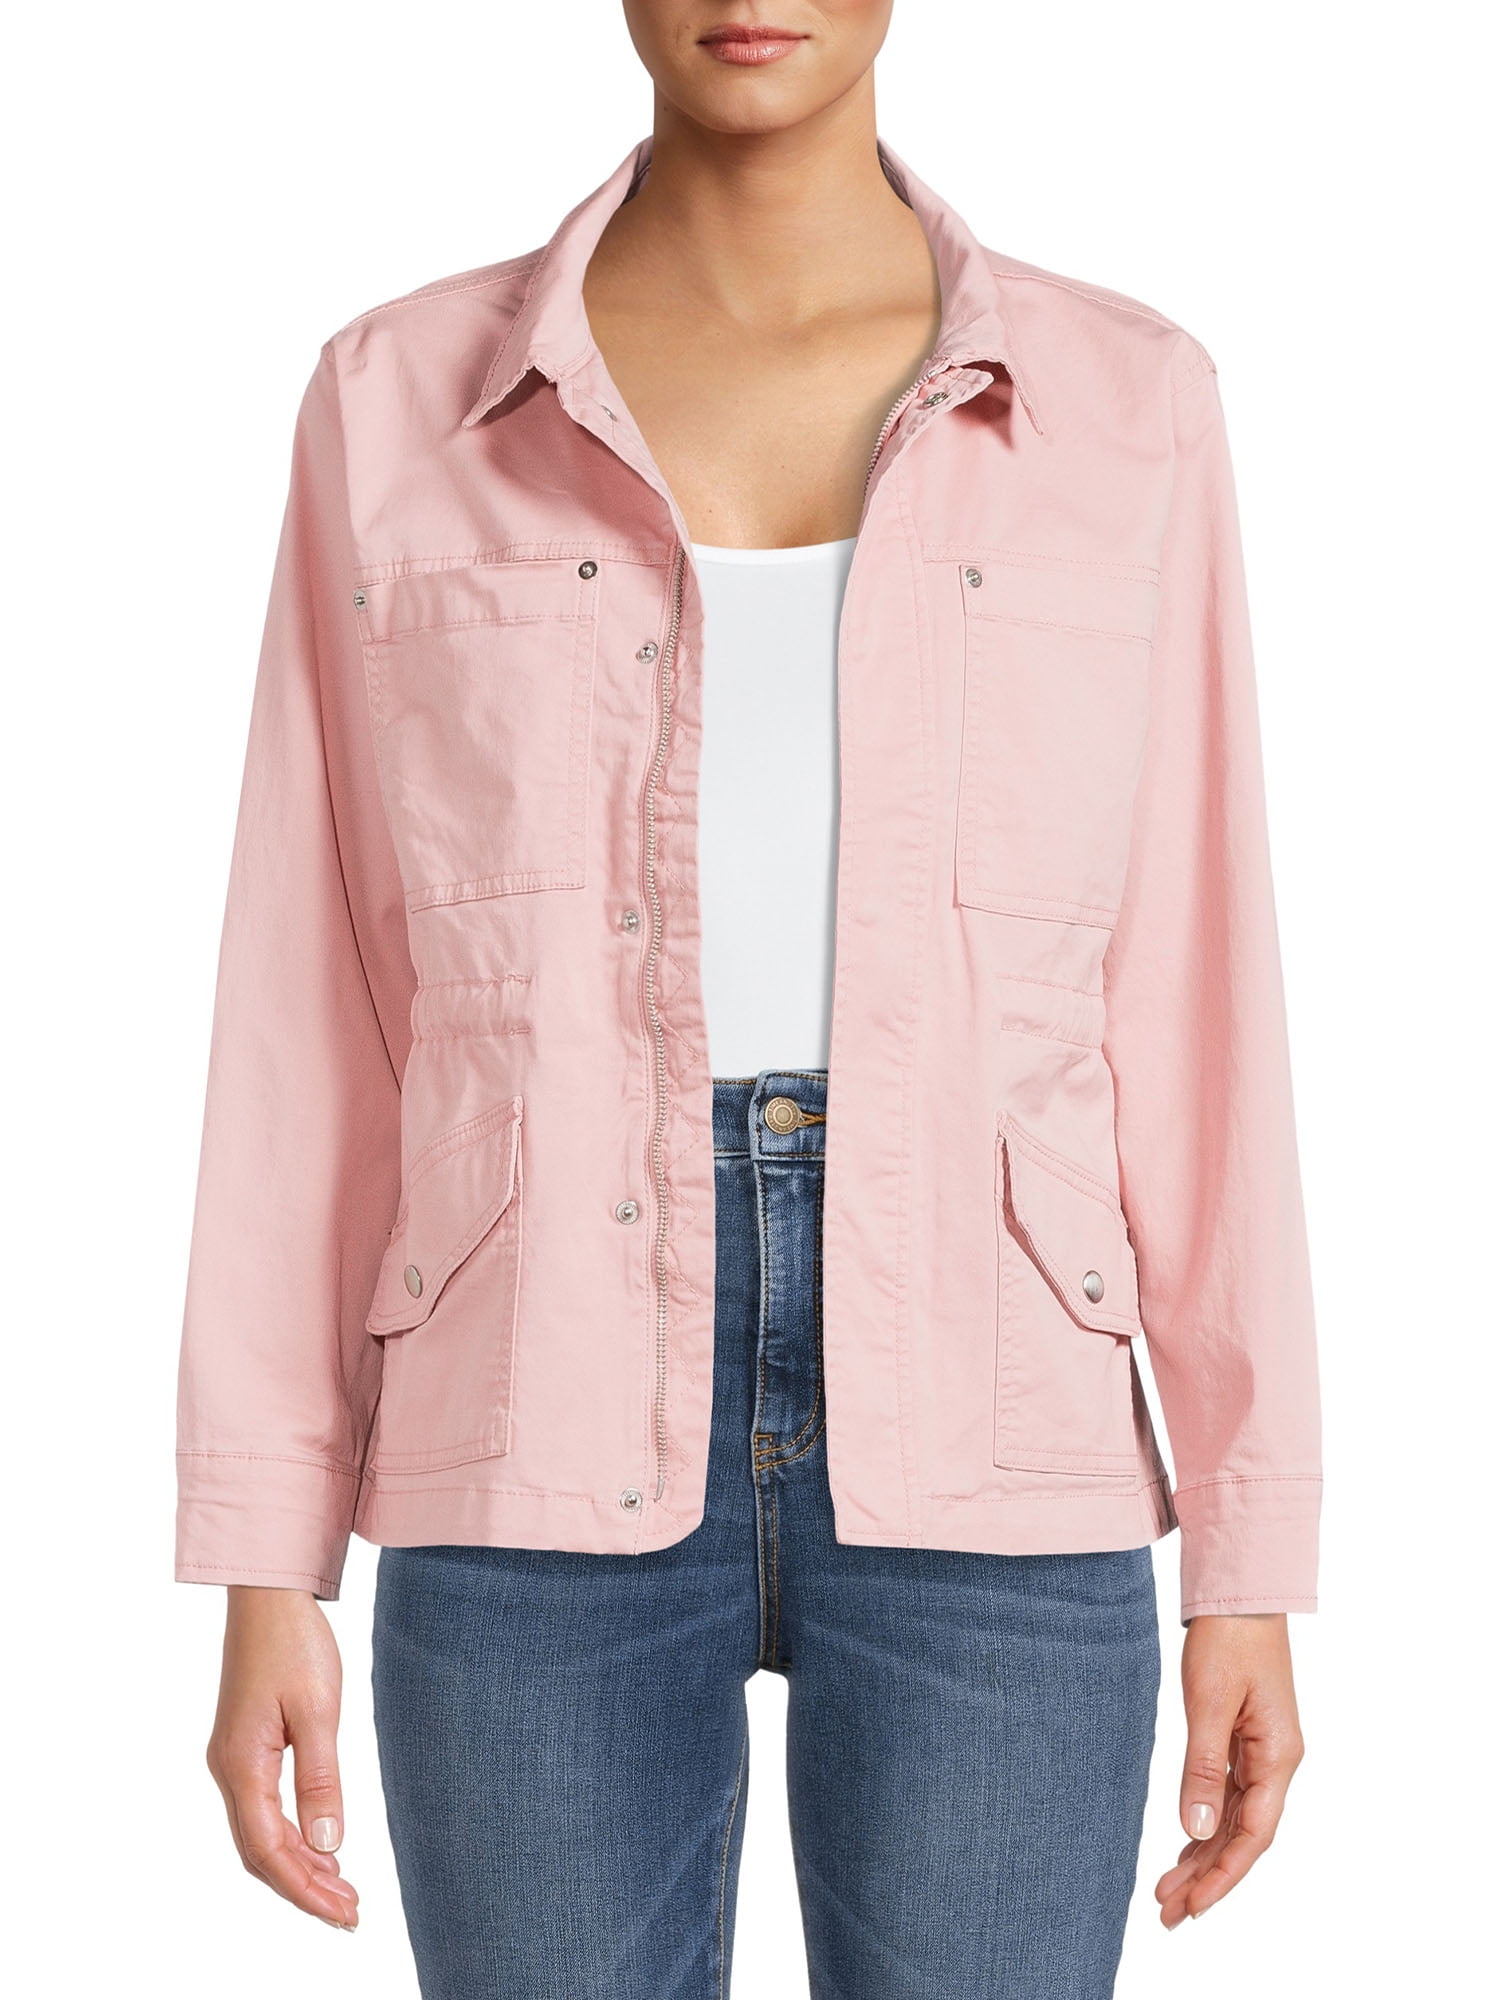 Bubble gum pink short 60s jacket